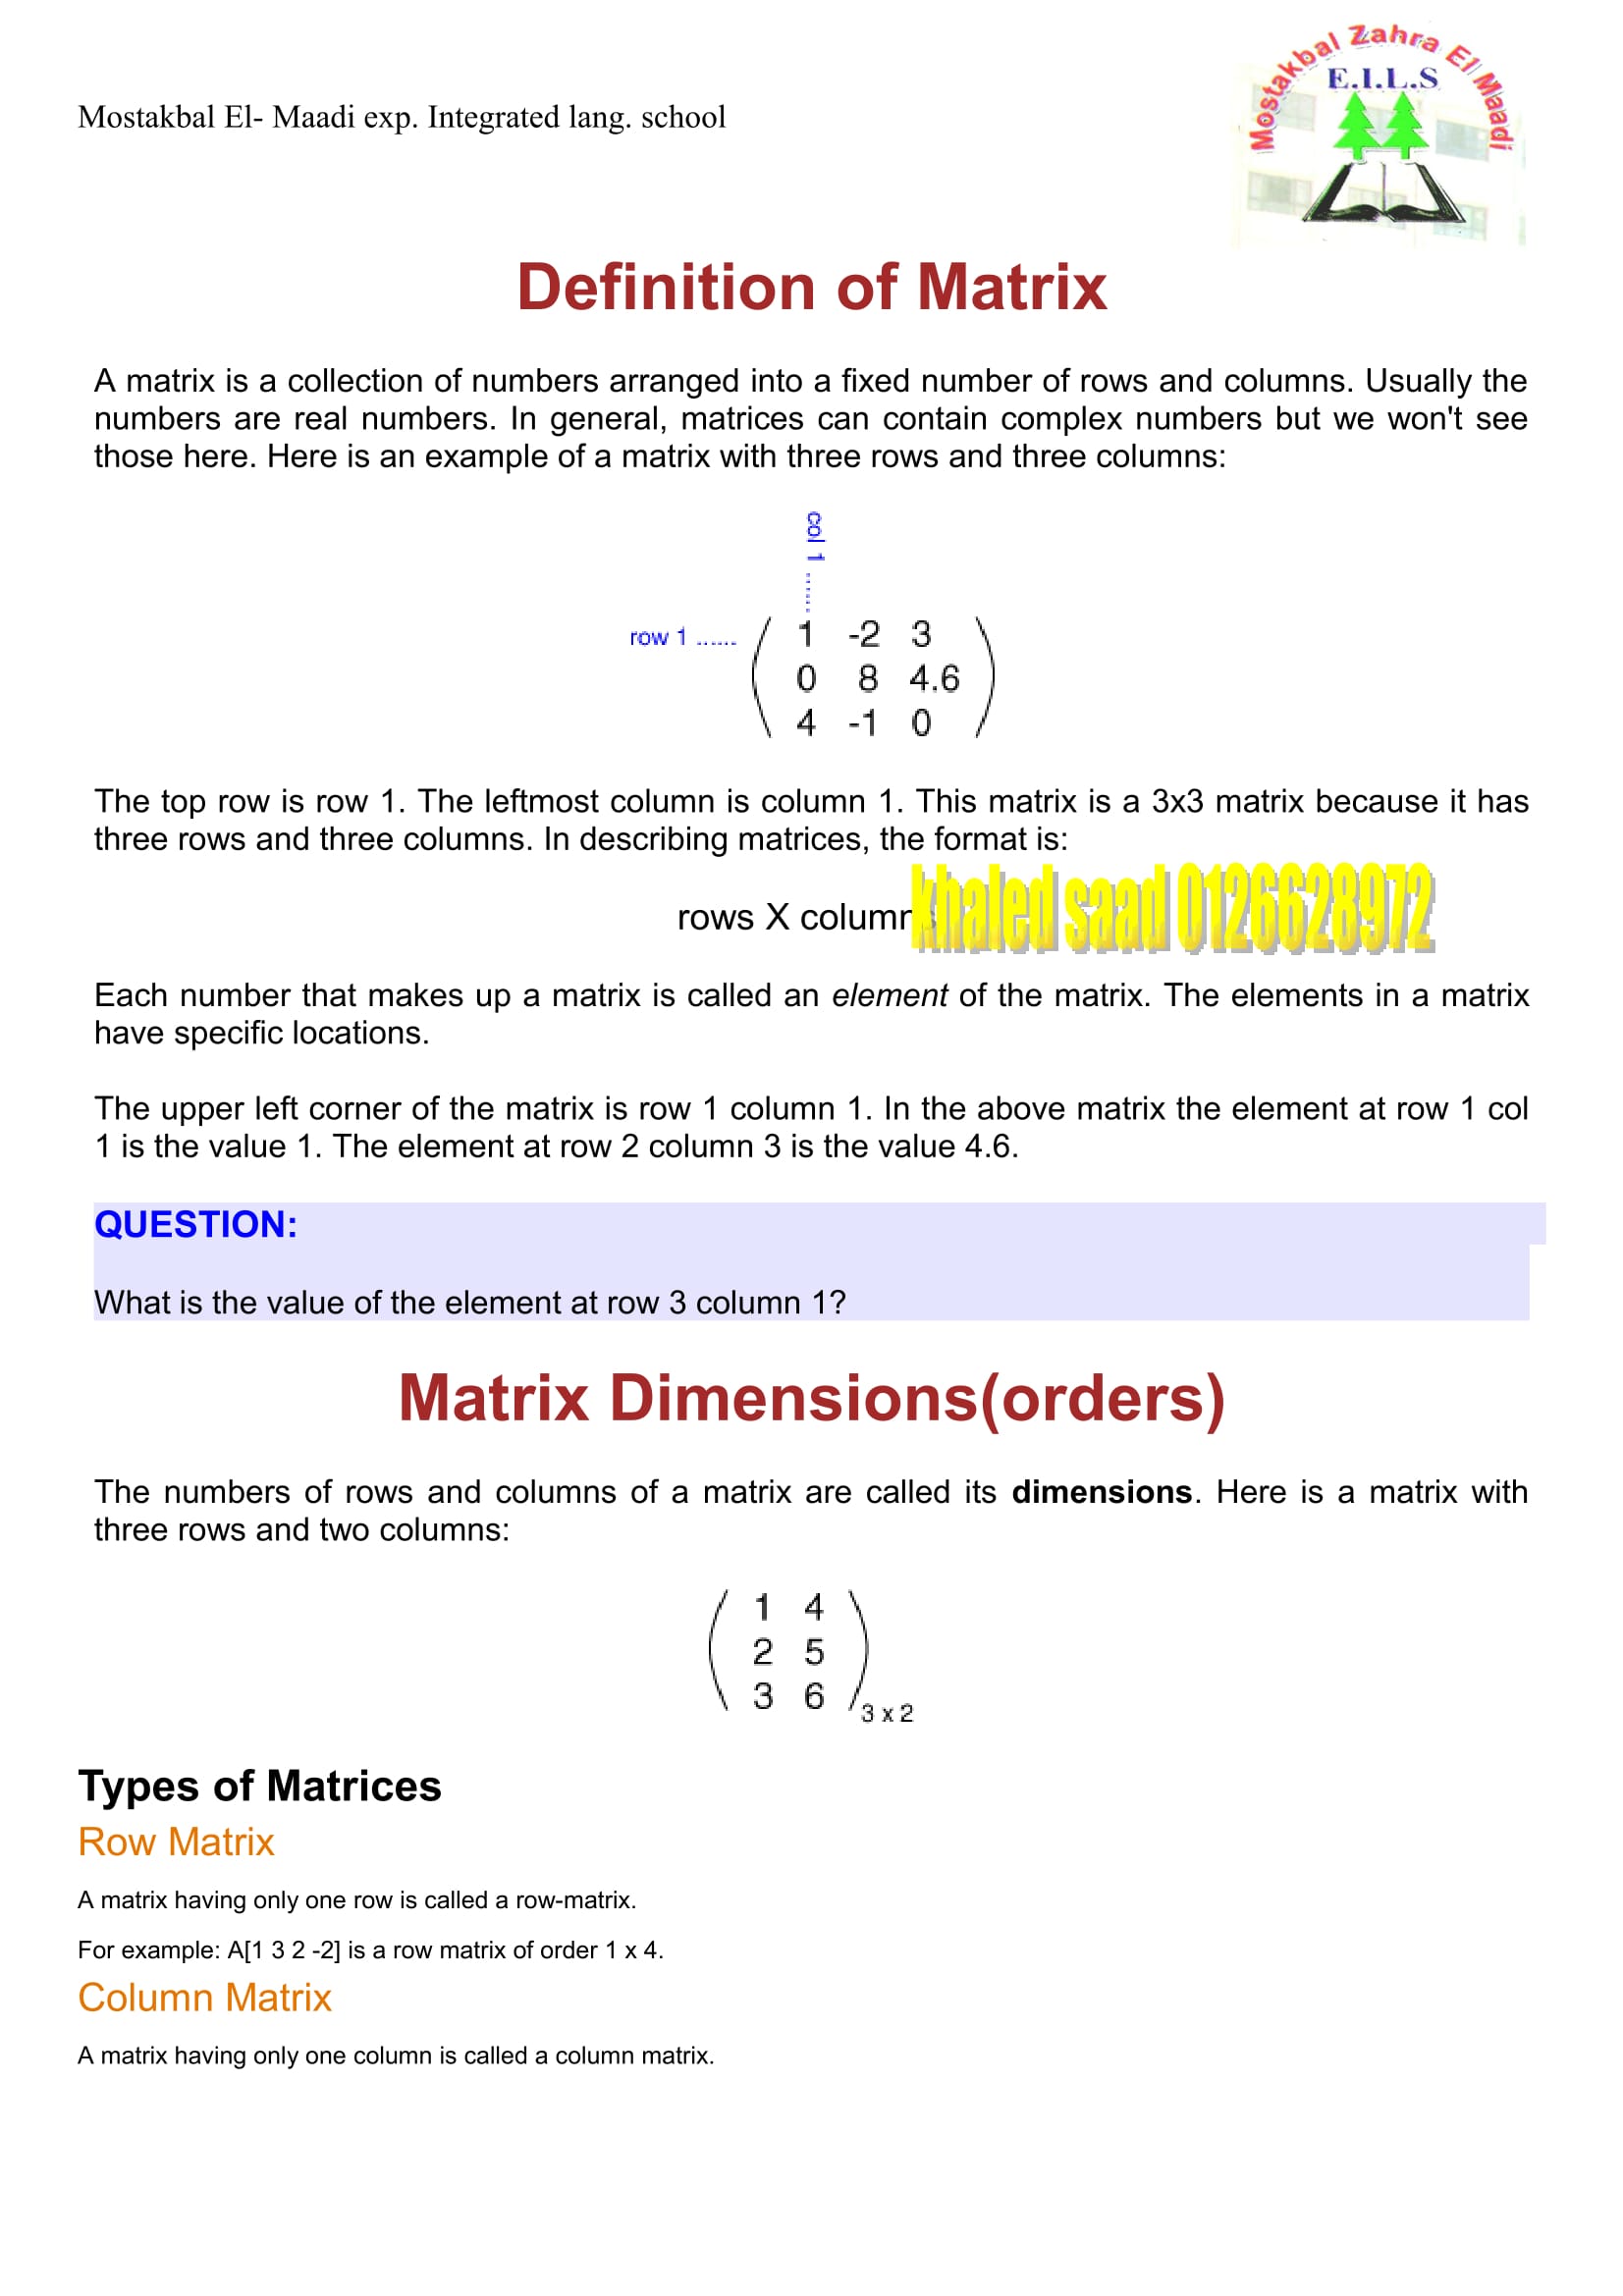 شرح وافى لدرس Definition of Matrix فى Algebra للصف الاول الثانوى اللغات الترم الاول